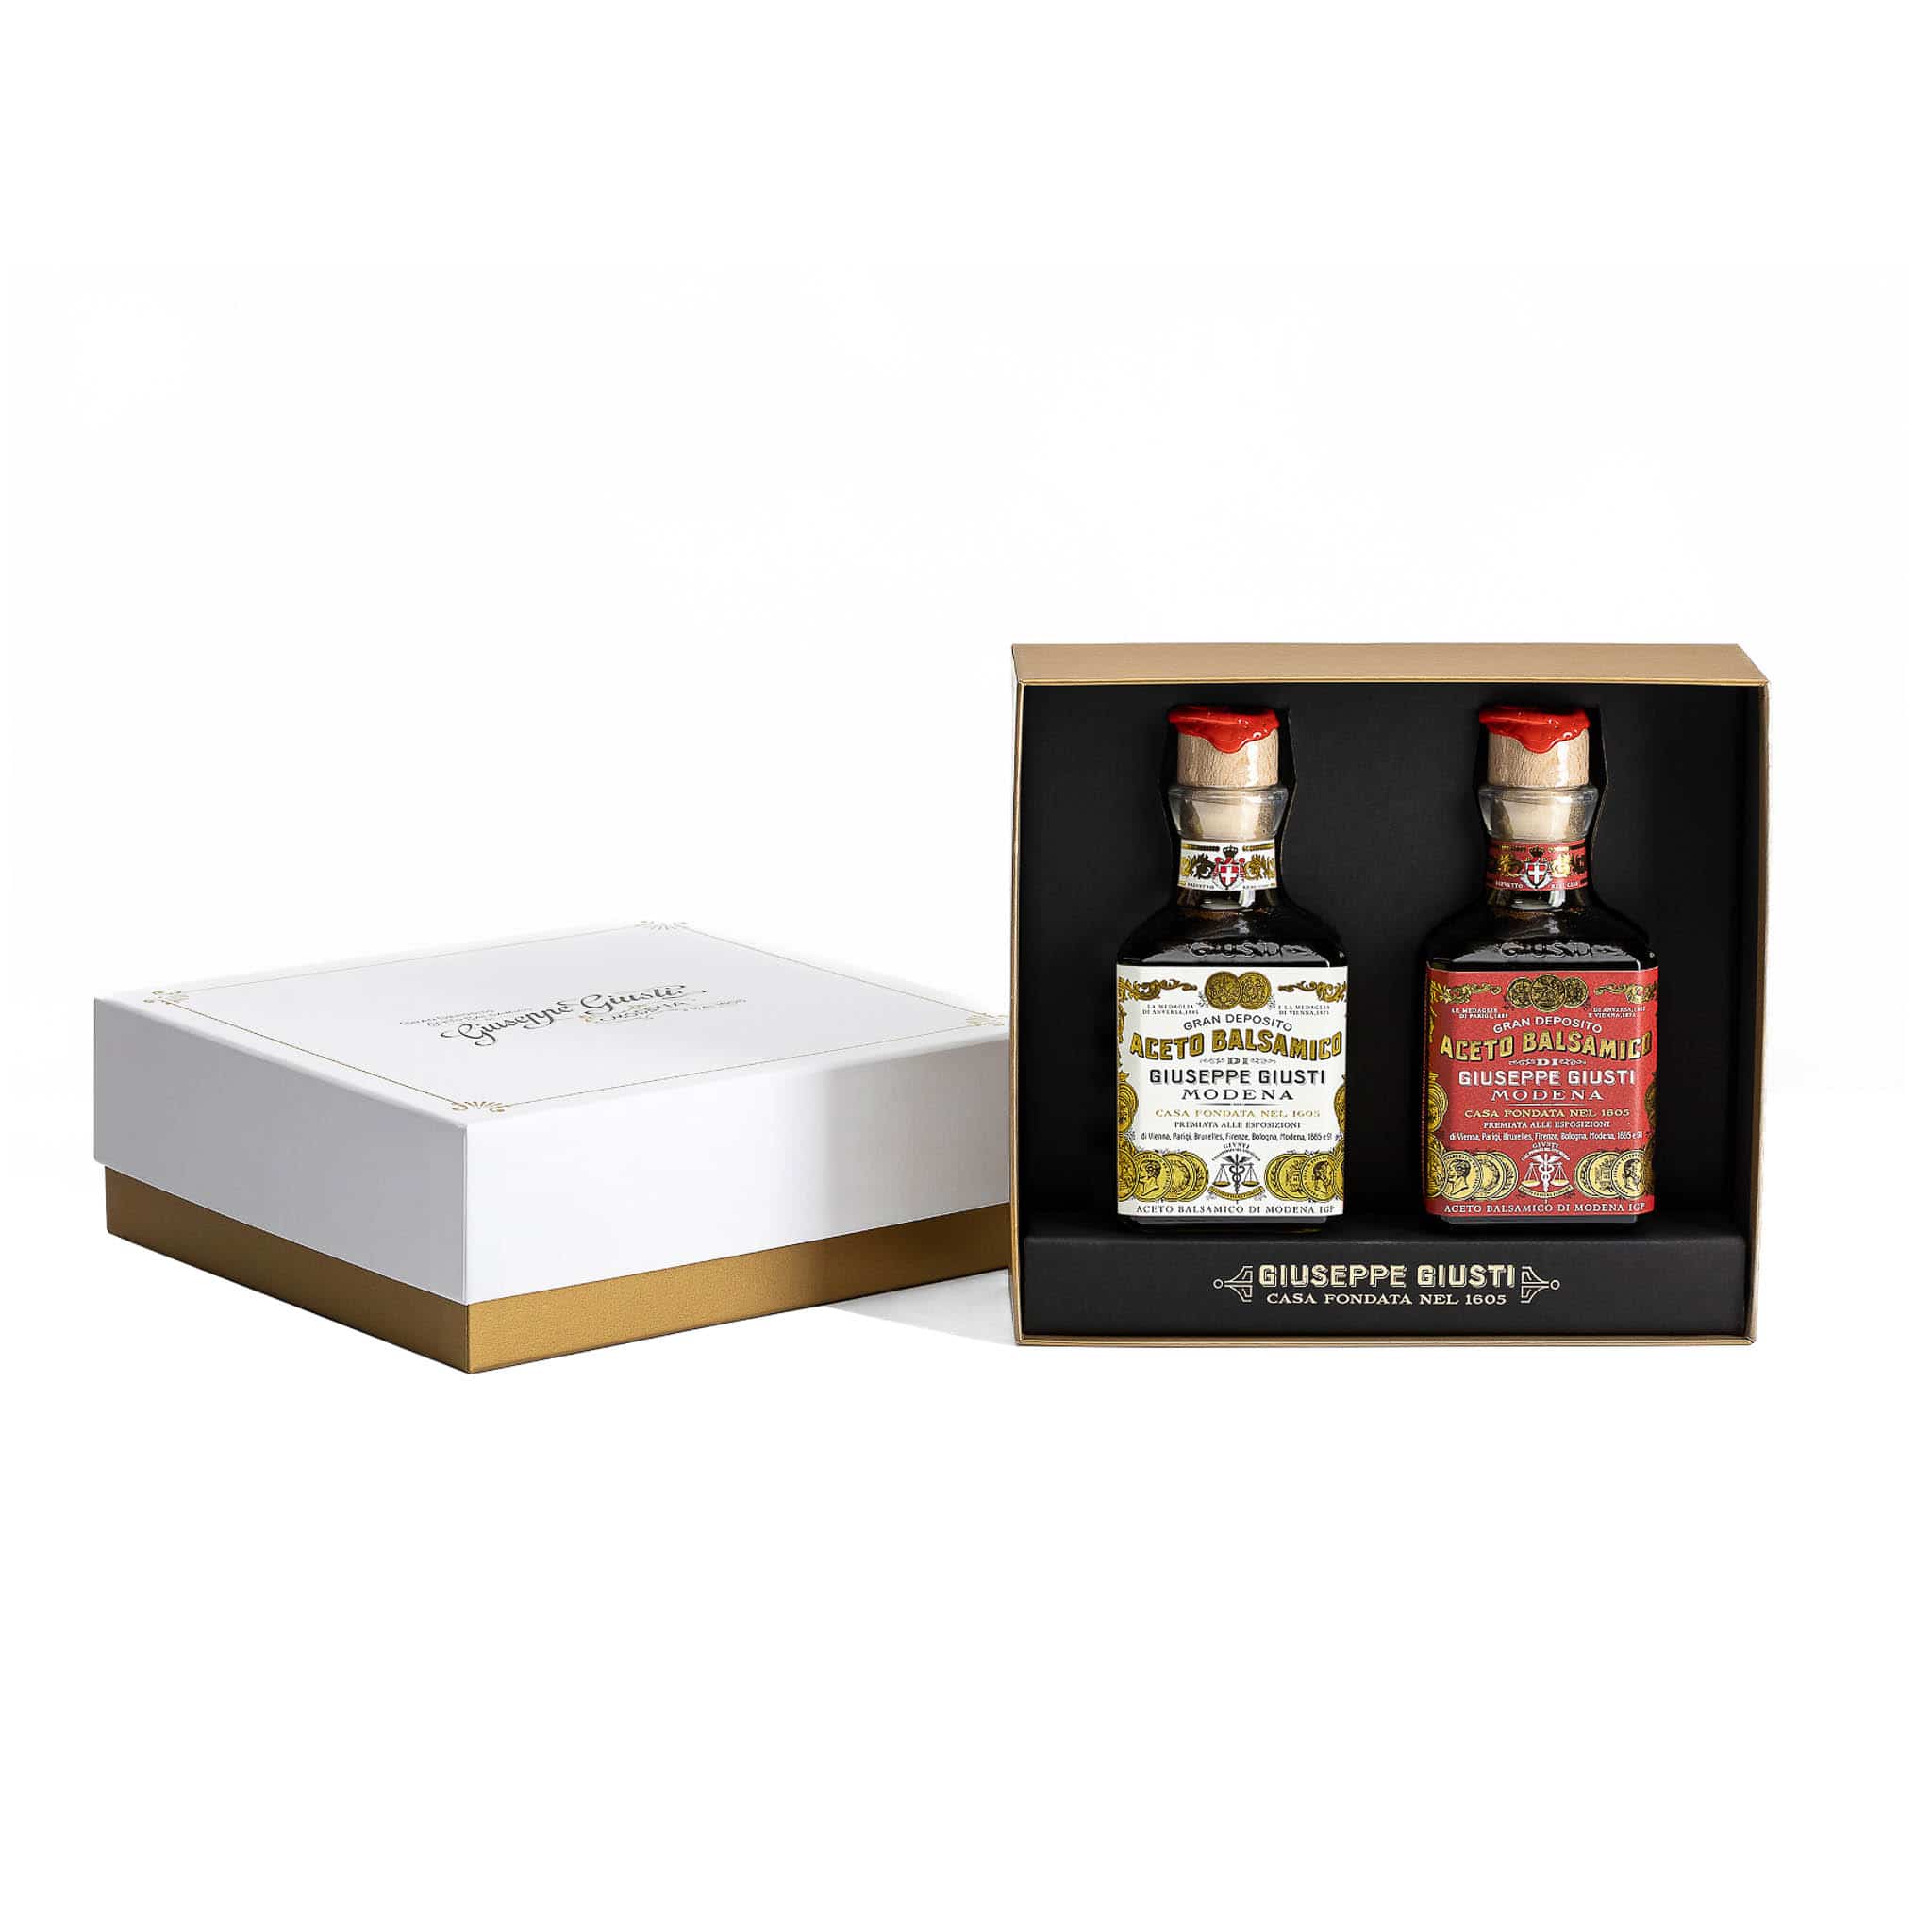 Giuseppe Giusti Duetto Balsamic Vinegar Gift Box